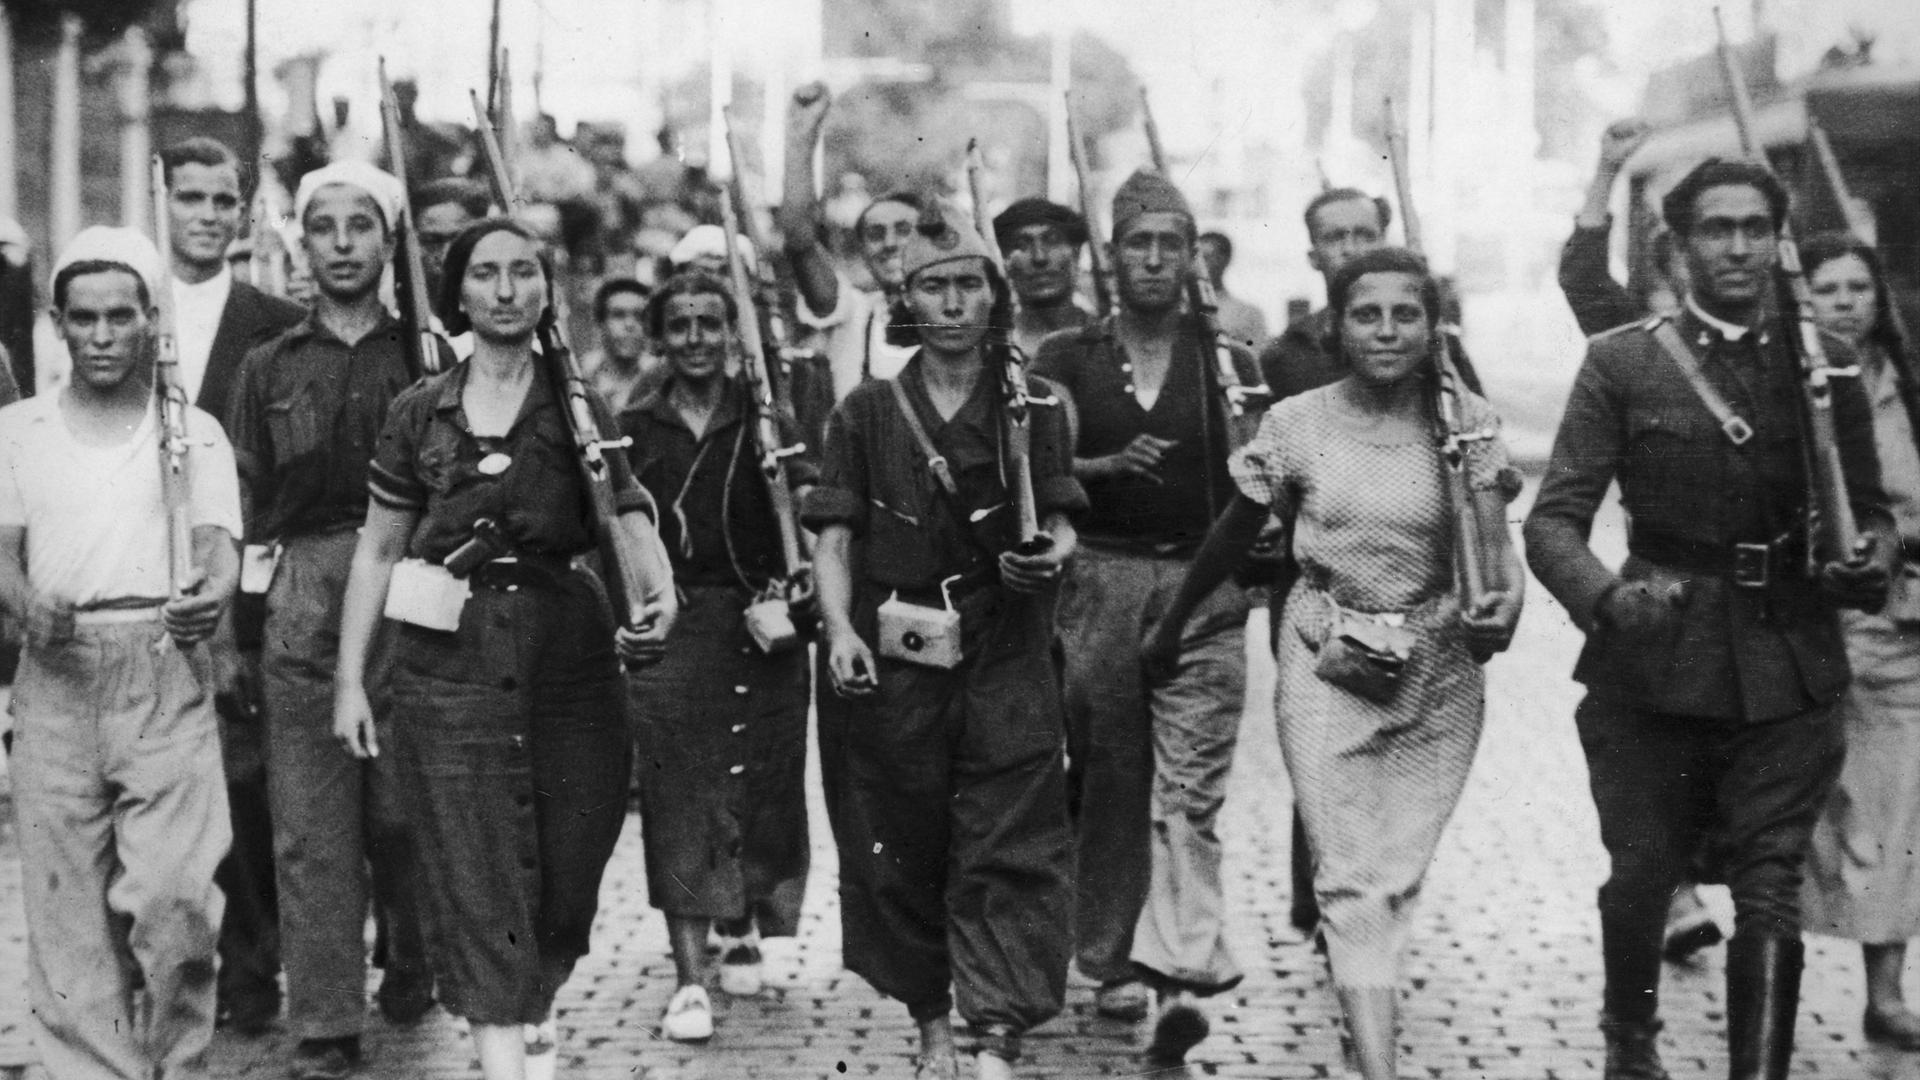 Republikanische Kämpfer zu Beginn des Spanischen Bürgerkriegs 1936